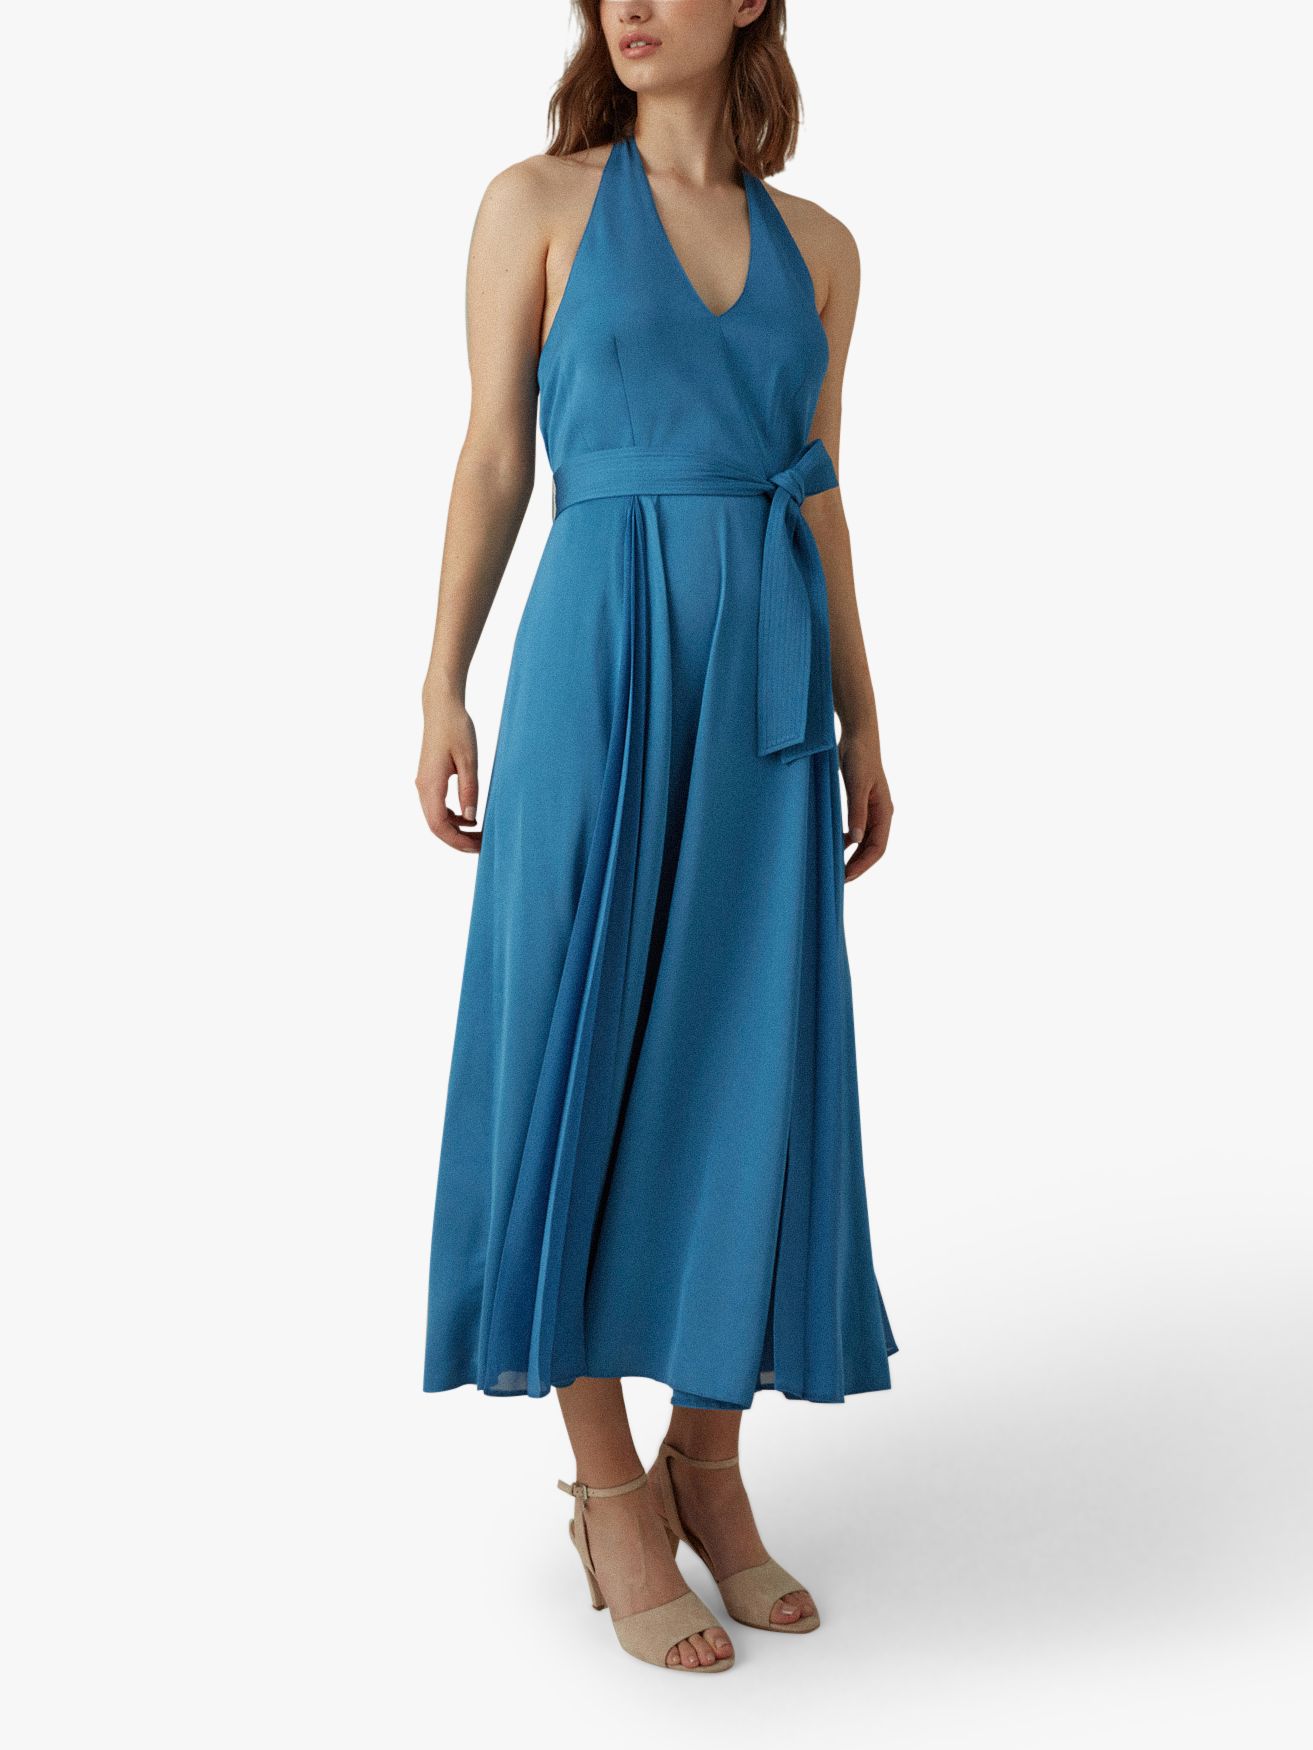 karen millen blue maxi dress